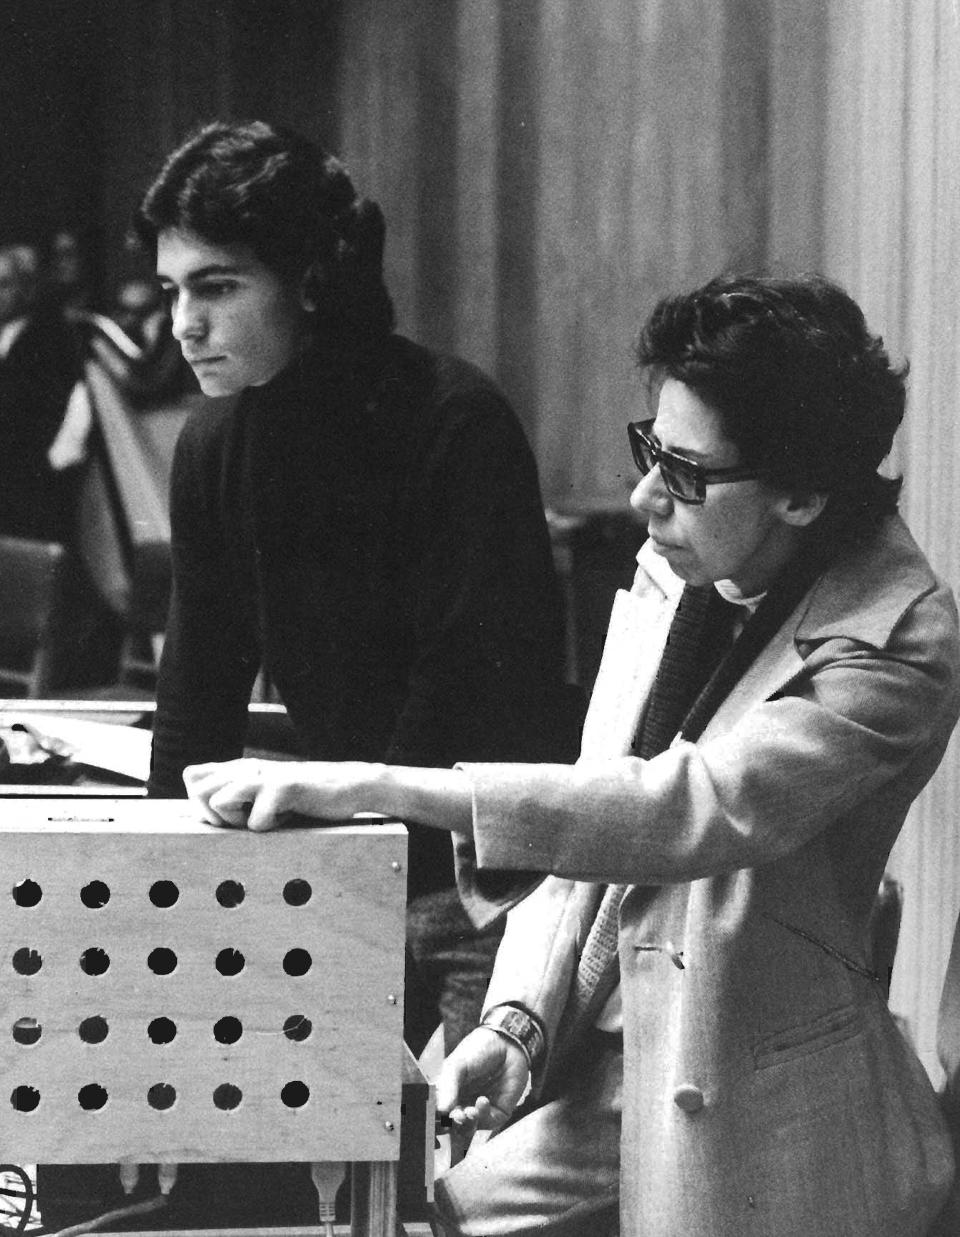 La compositora Jacqueline Nova, en primer plano, en el estreno de su obra "Omaggio a Catullus", en Bogotá en 1975, el año en que falleció. (Archivo Ana María Romano G. vía The New York Times)